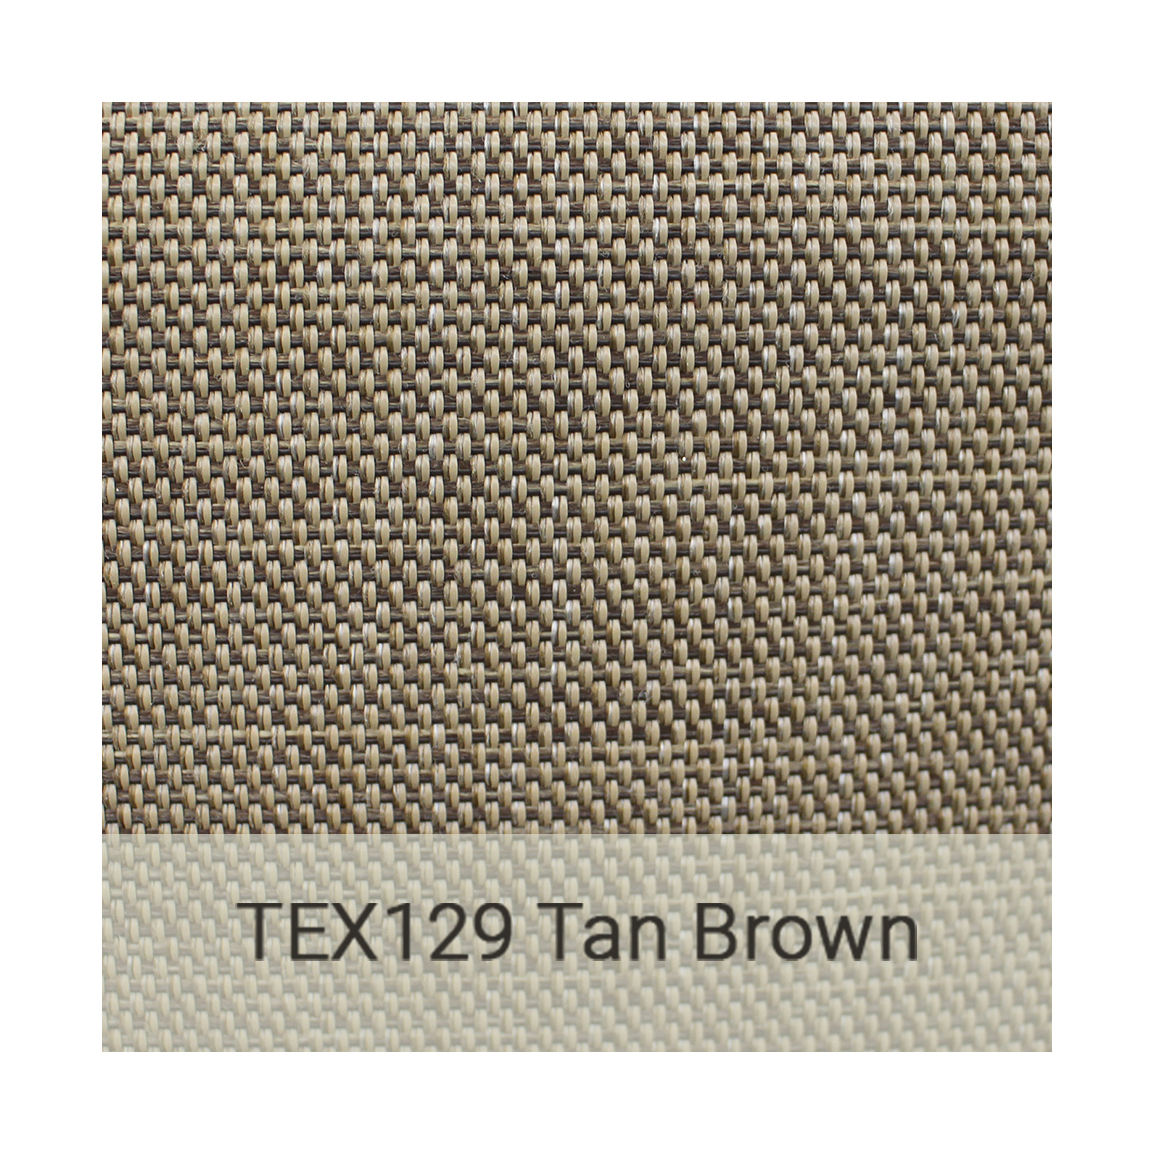 Kingston Casual textiline-tex129-tan-brown